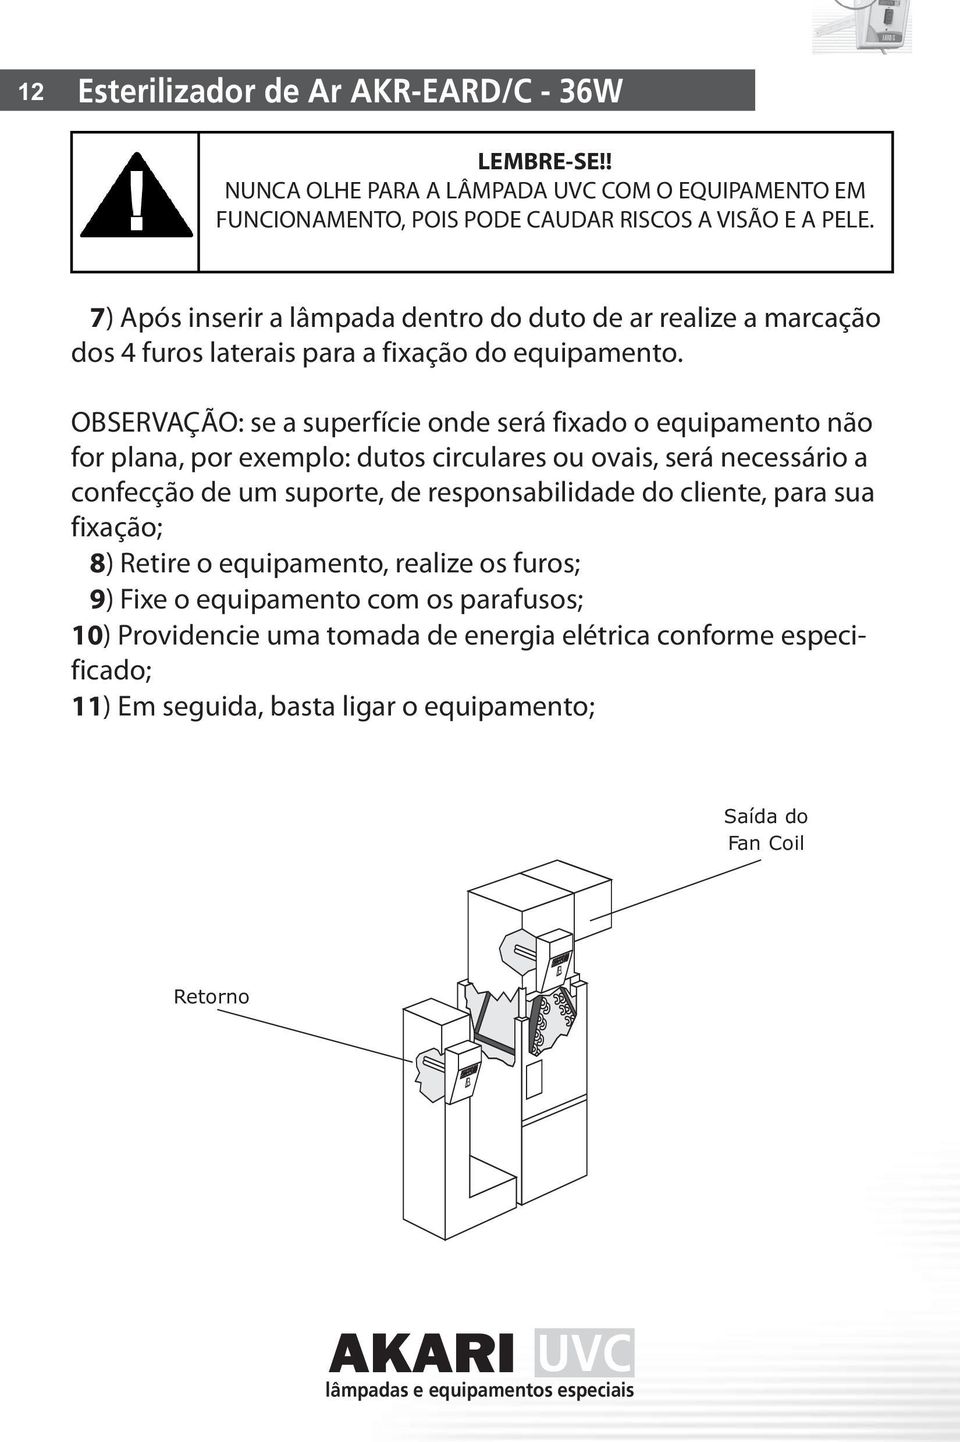 OBSERVAÇÃO: se a superfície onde será fixado o equipamento não for plana, por exemplo: dutos circulares ou ovais, será necessário a confecção de um suporte, de